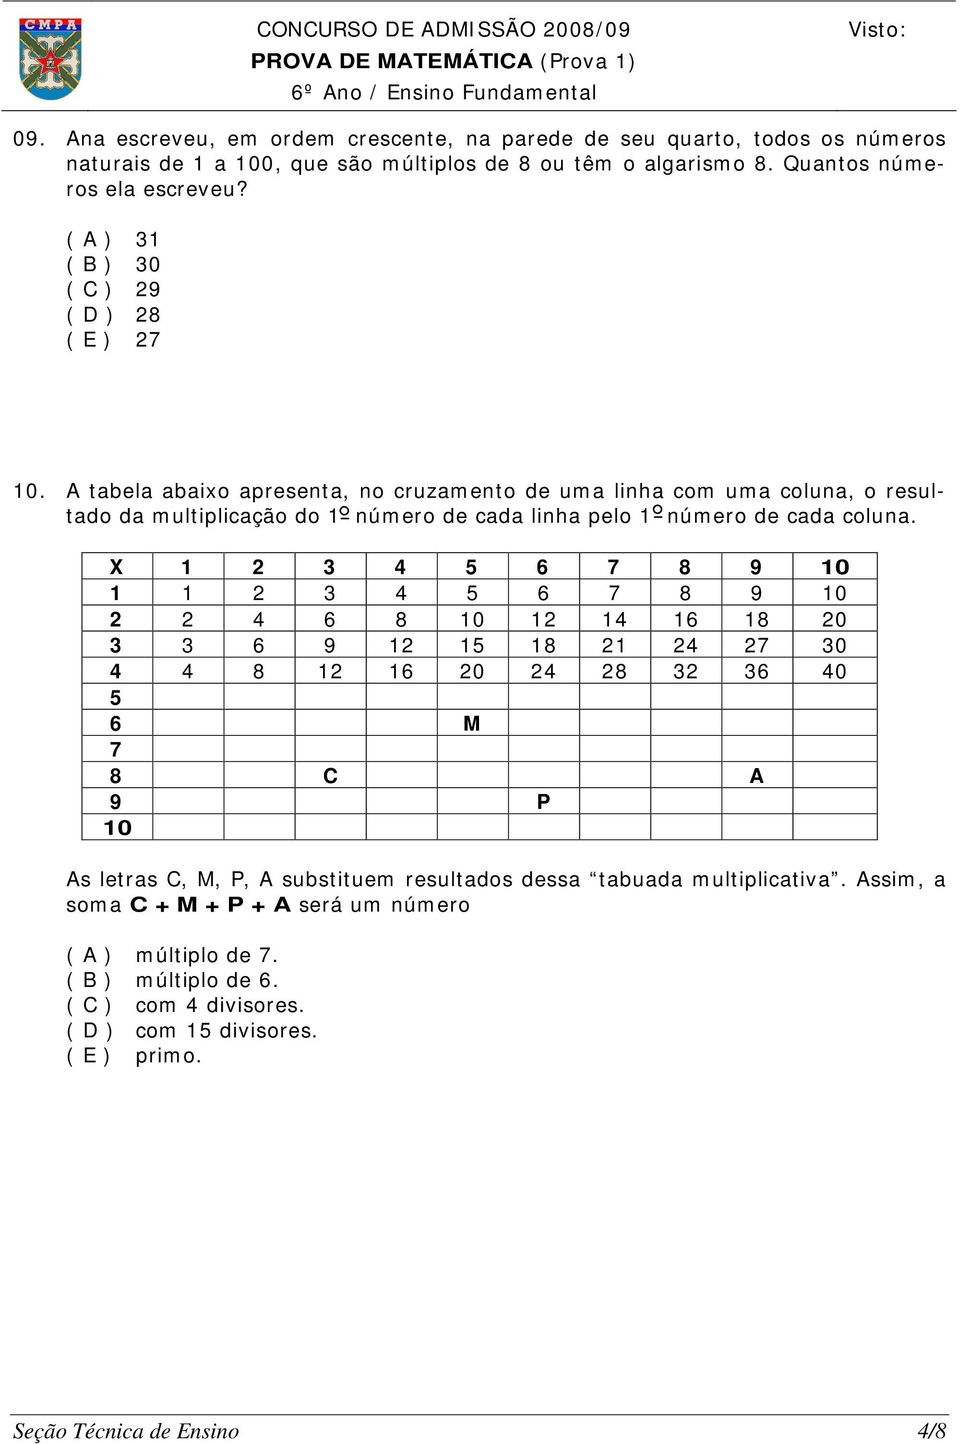 A tabela abaixo apresenta, no cruzamento de uma linha com uma coluna, o resultado da multiplicação do 1 número de cada linha pelo 1 número de cada coluna.